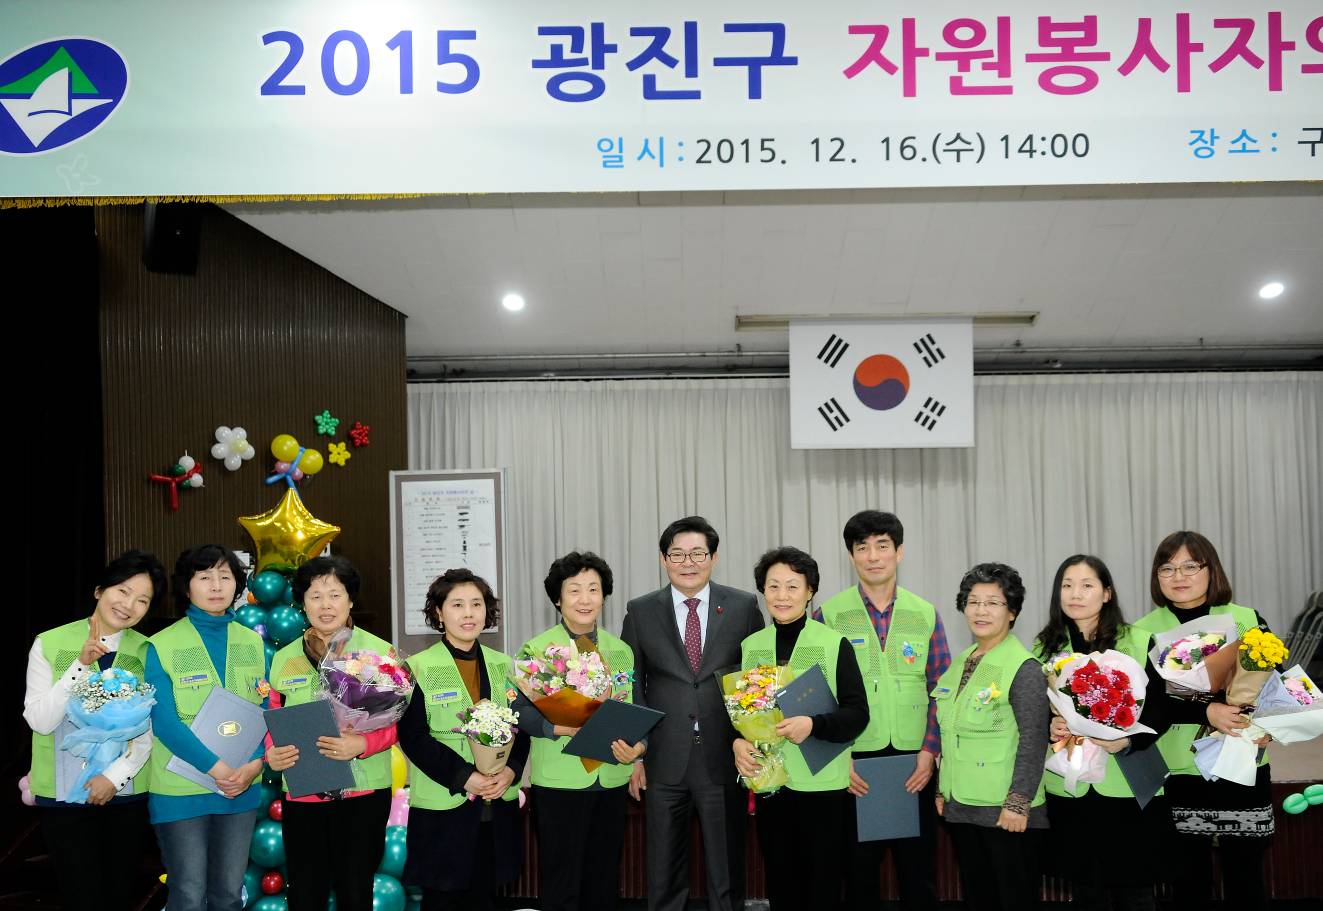 20151216-2015 자원봉사자의 날 기념 행사 개최 3차